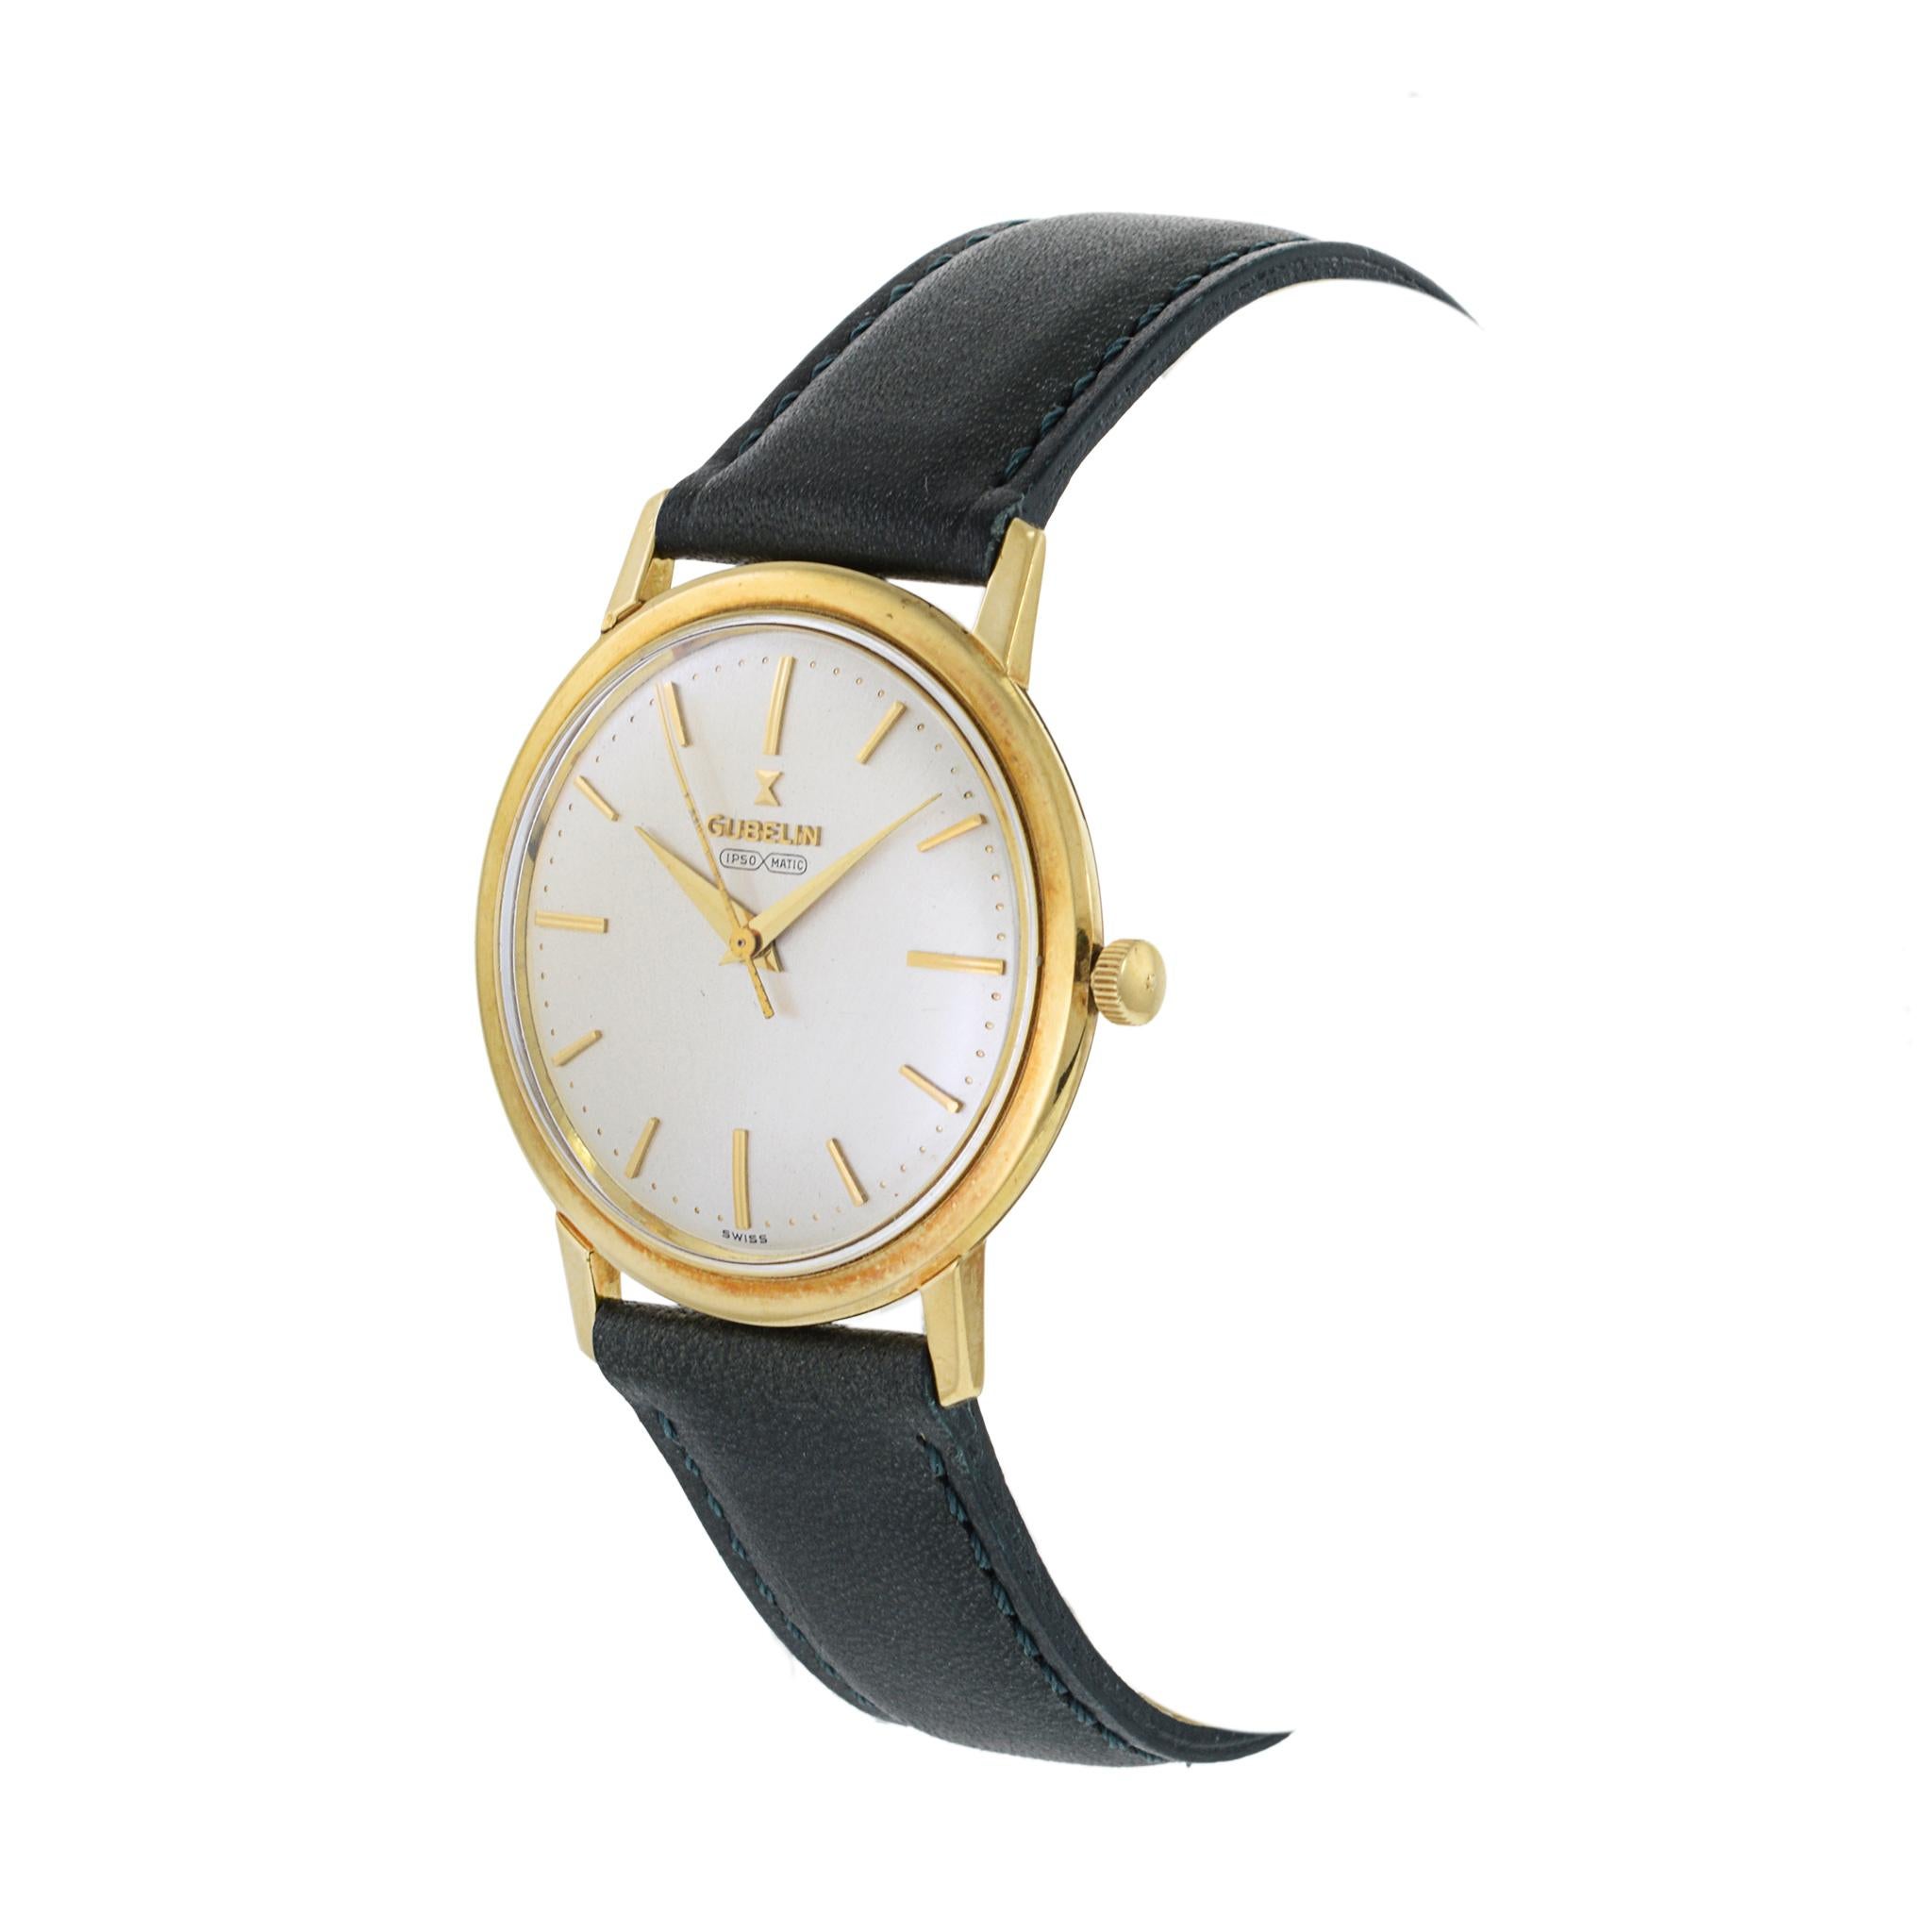 Il s'agit d'un exemple de l'horlogerie des années 1960 dans toute sa splendeur. Cette montre Gubelin Ipso Matic 18K fait partie des montres les plus collectionnées de cette période.

Cette montre est dotée d'un boîtier Spillmann en or jaune 18